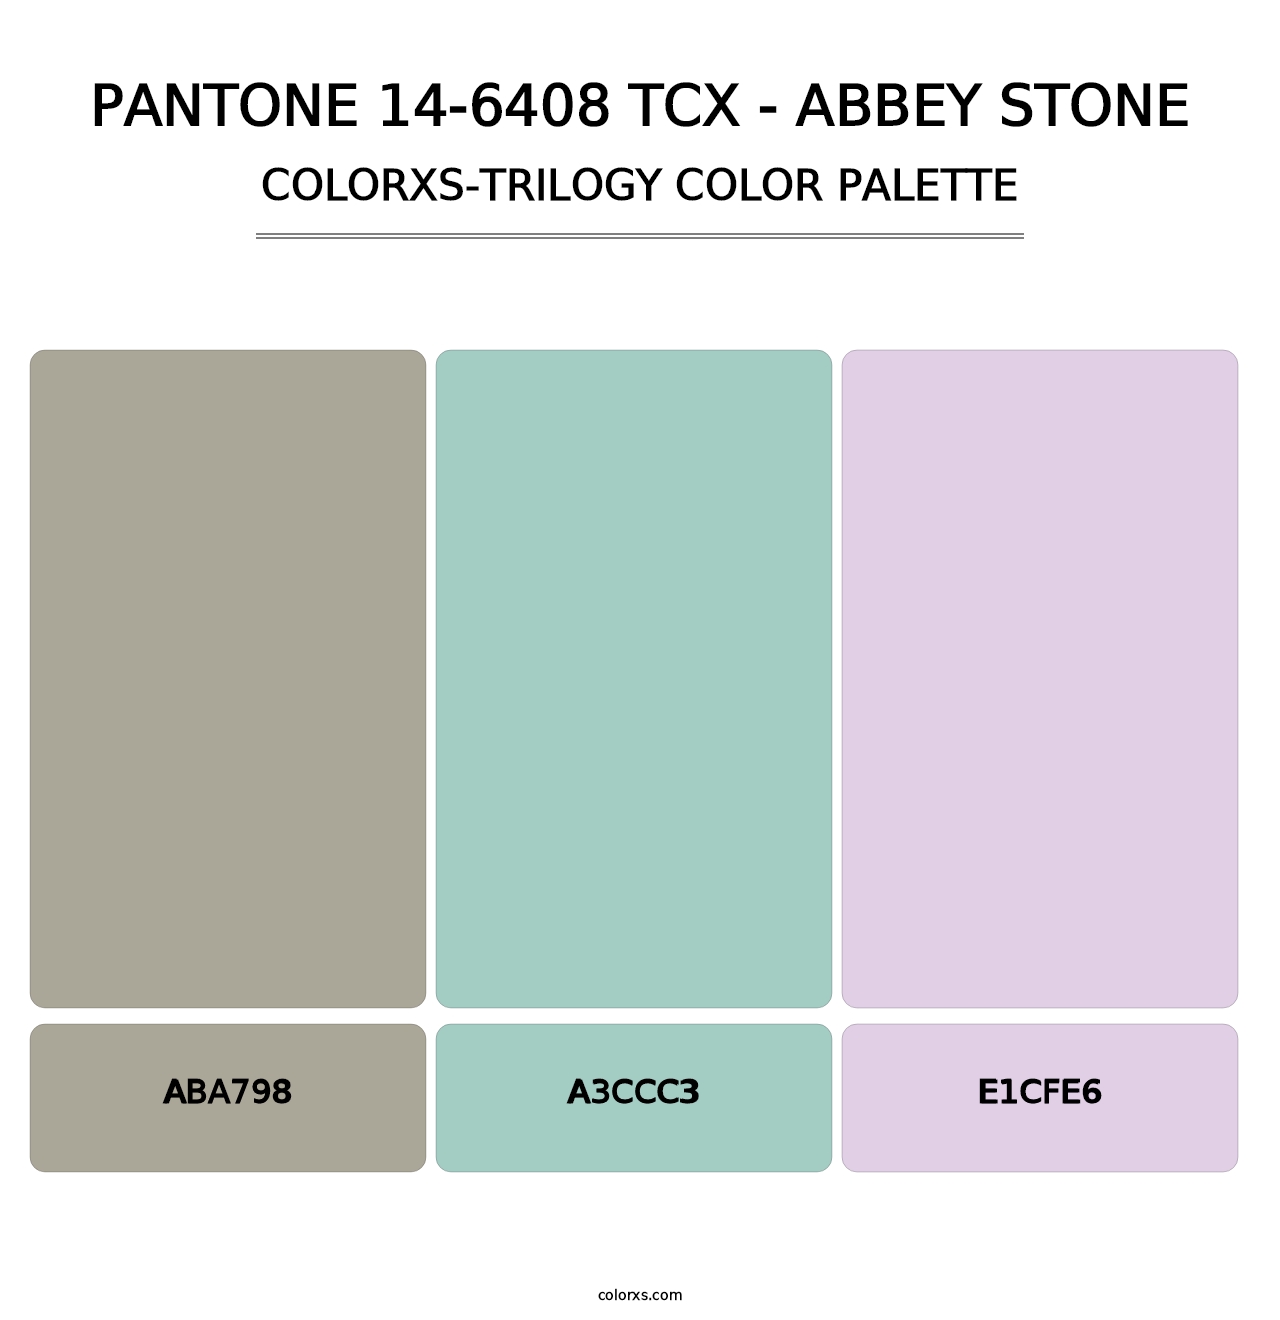 PANTONE 14-6408 TCX - Abbey Stone - Colorxs Trilogy Palette